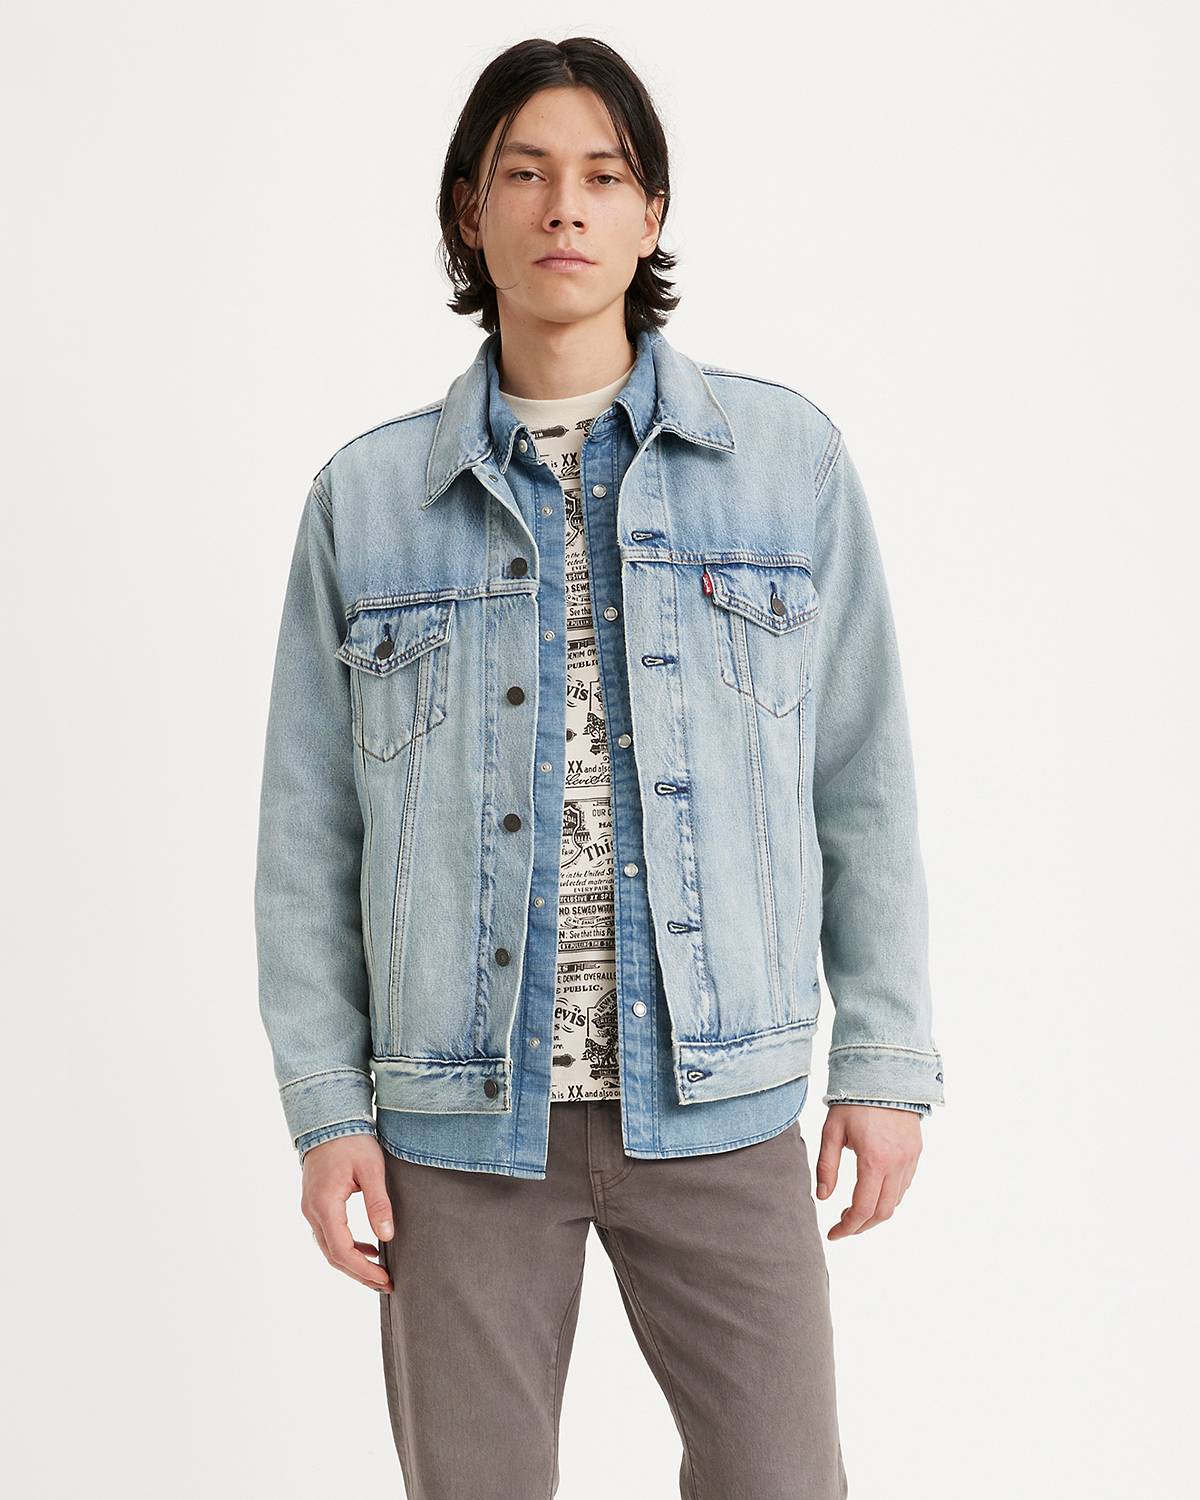 Male model wearing a jean jacket.